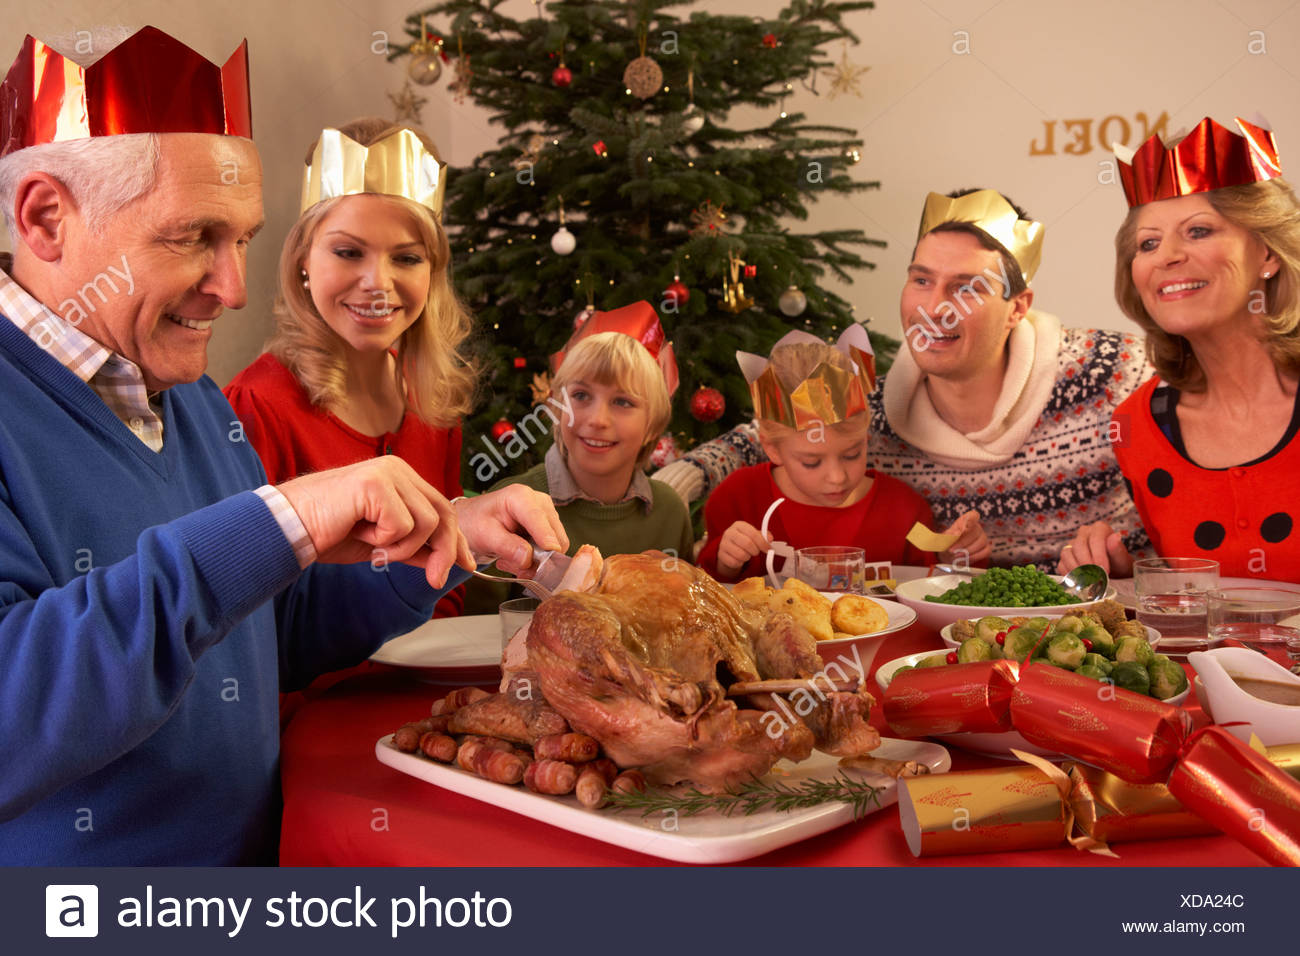 Foto Di Natale Famiglia.Tre Generazioni La Famiglia Godendo Il Pranzo Di Natale A Casa Foto Stock Alamy